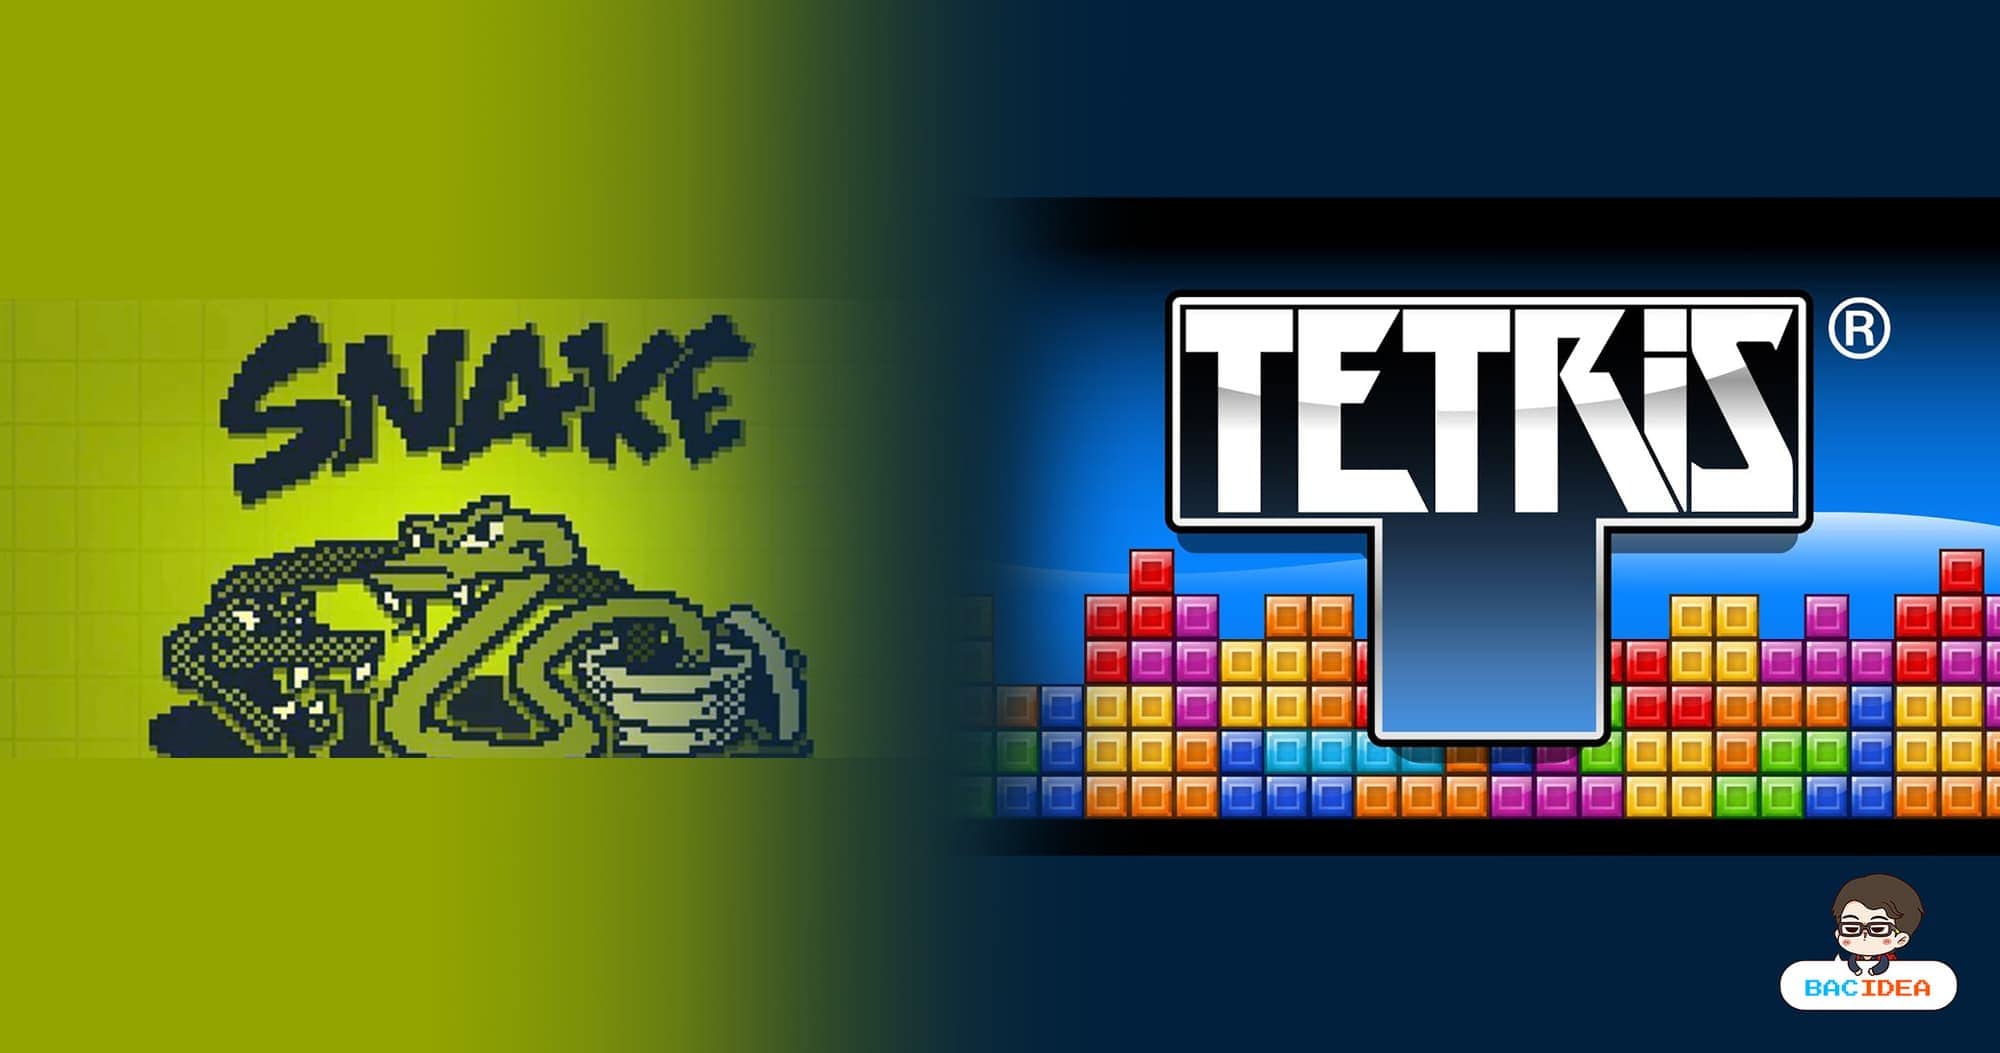 ท้าทายความสามารถ มาลองเล่นเกมงูและ Tetris พร้อมกัน แล้วจะรู้ว่ายากกว่าที่คิด 1